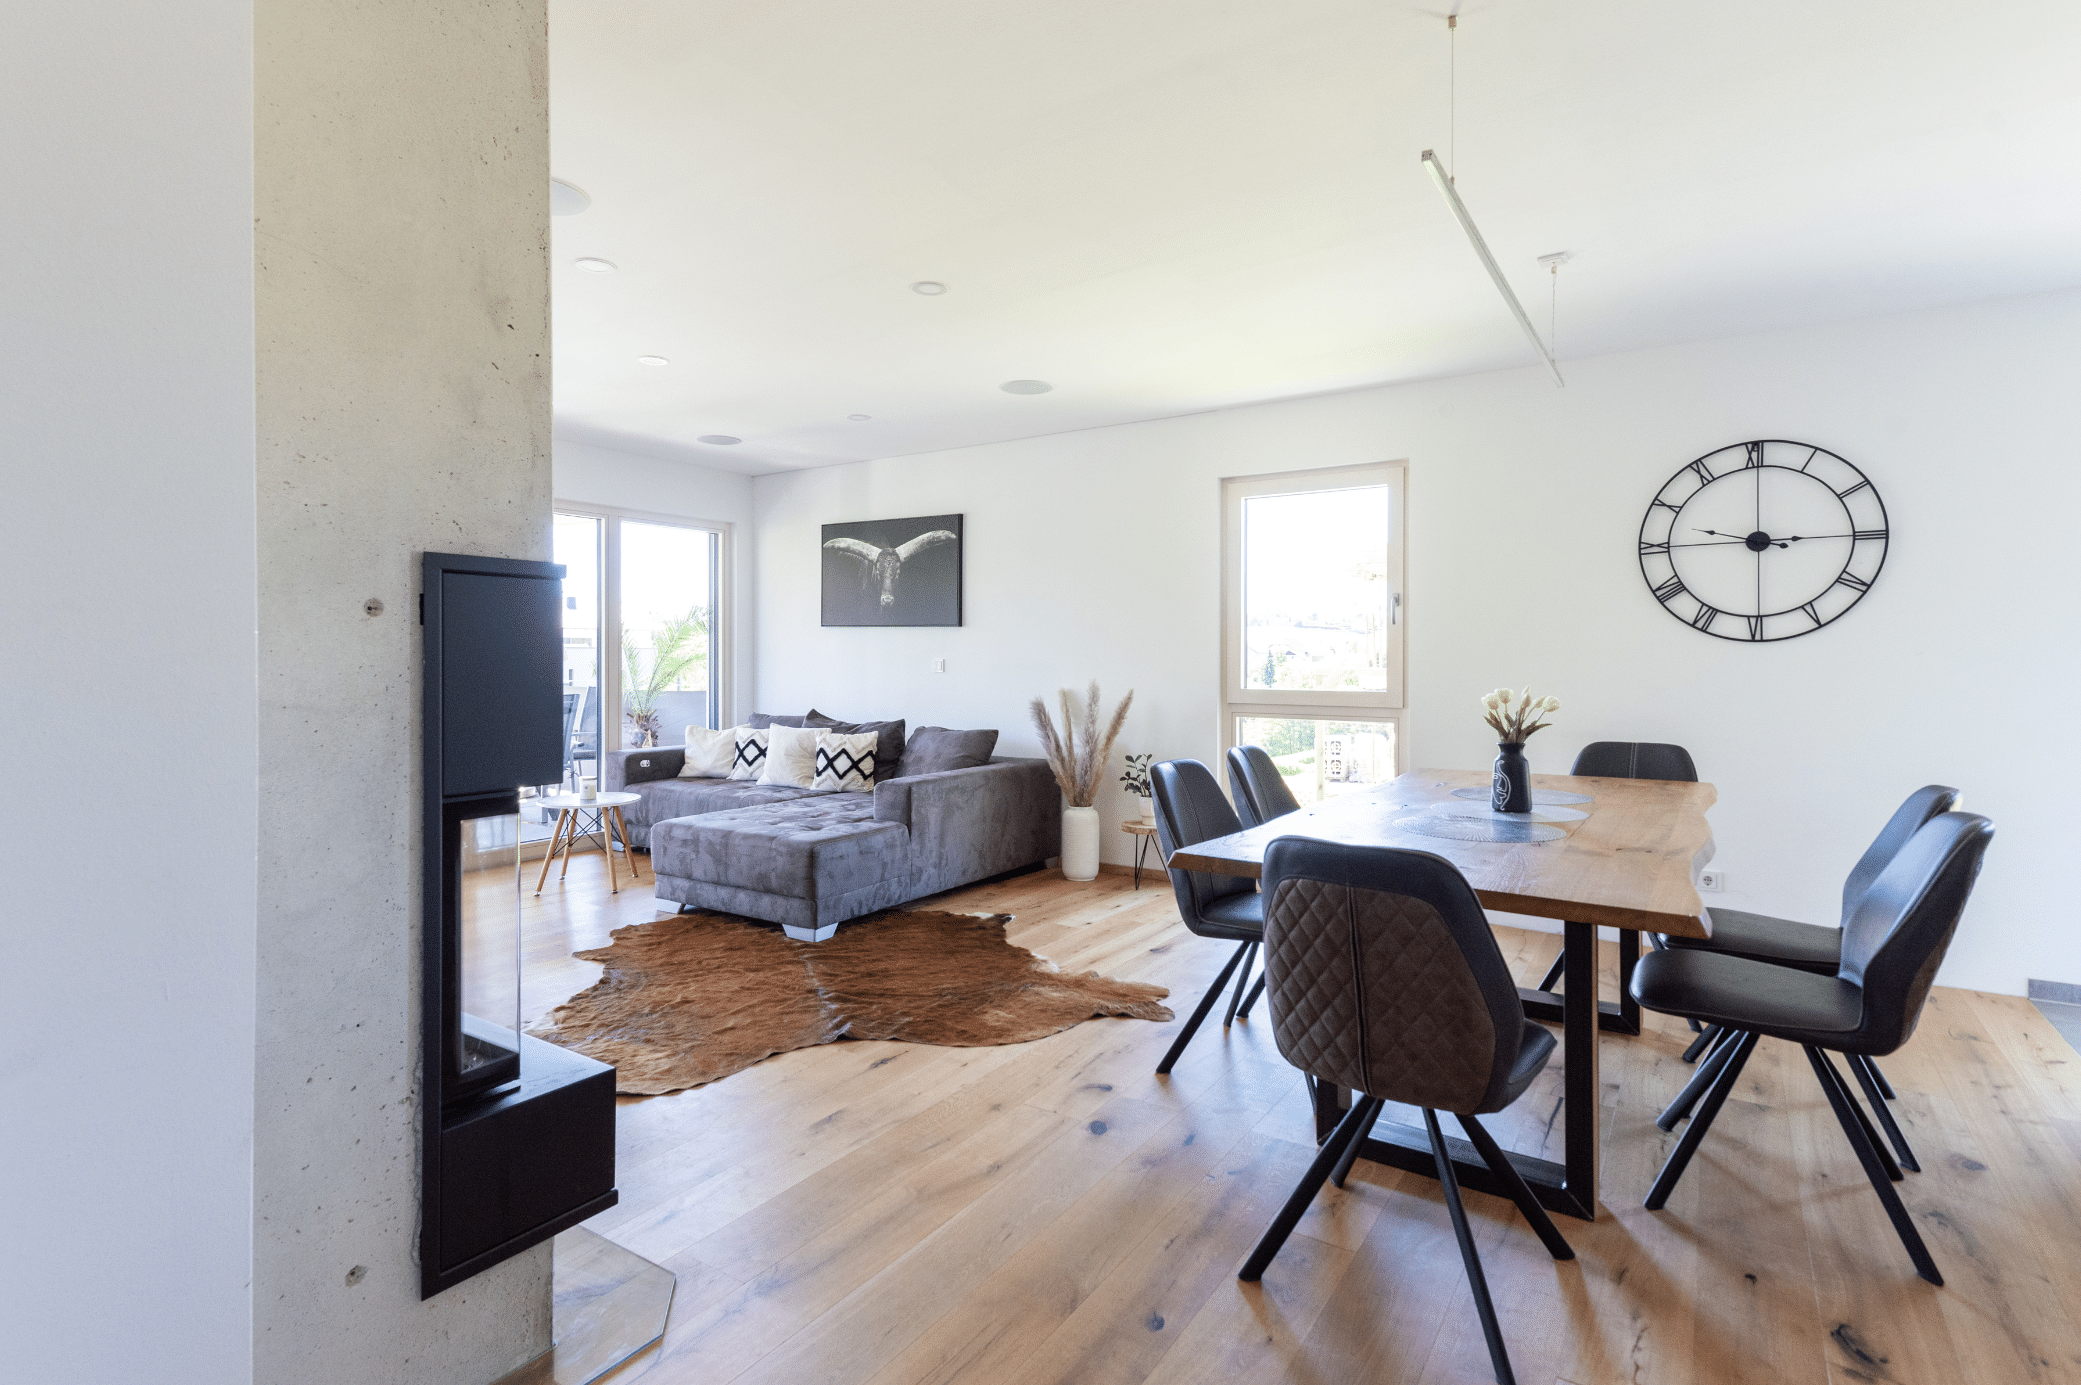 Hartl Haus zeigt eine offene Wohnküche mit Kamin, einem Esstisch aus Holz, Stühlen und Blick auf die graue Couch mit braunem Tierfell am Boden.